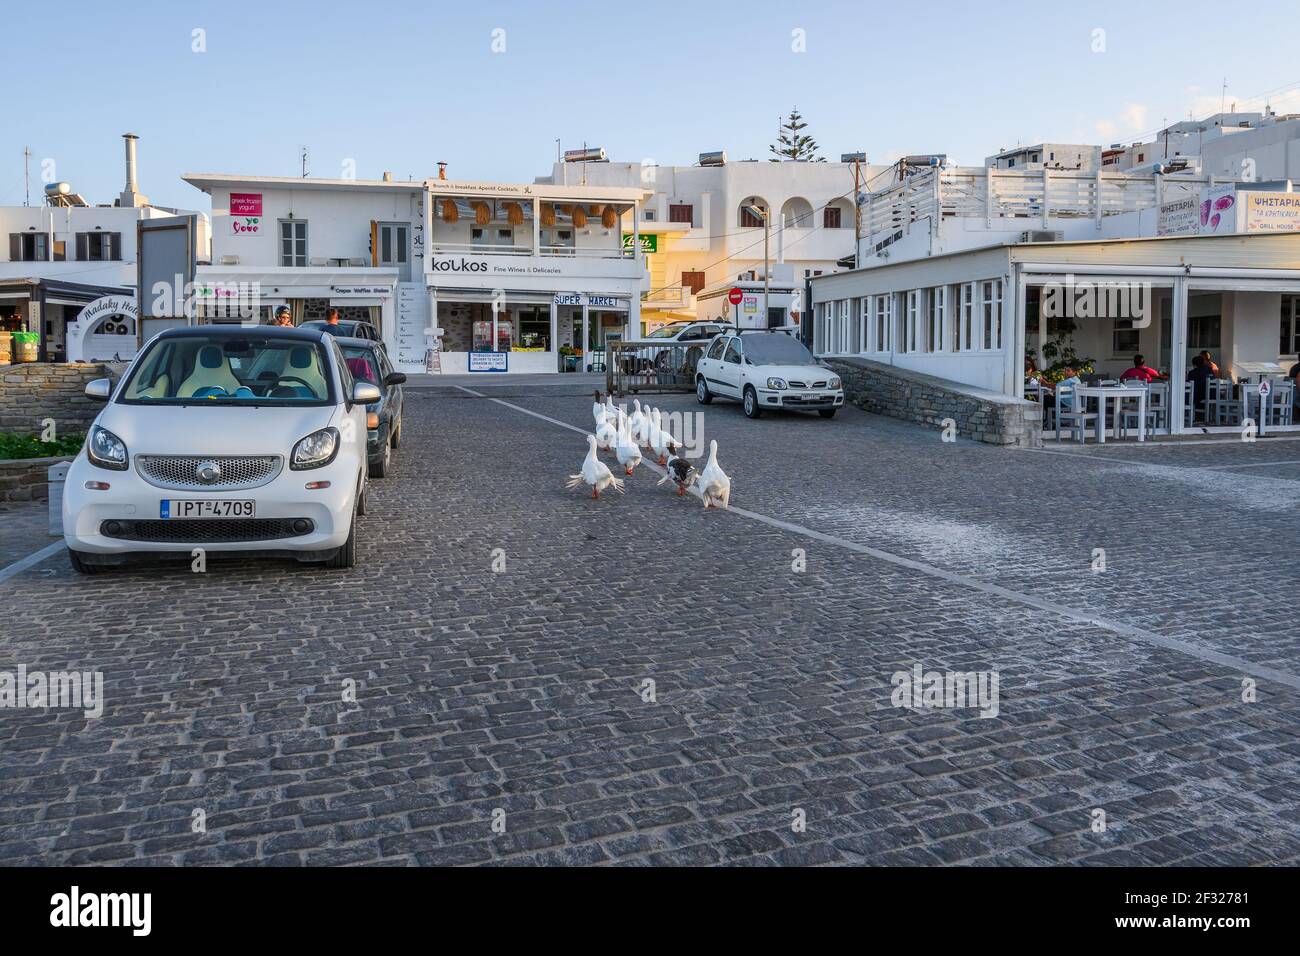 Paros, Greece - September 27, 2020: A gaggle of white geese on the street in Naoussa on Paros island, Greece Stock Photo